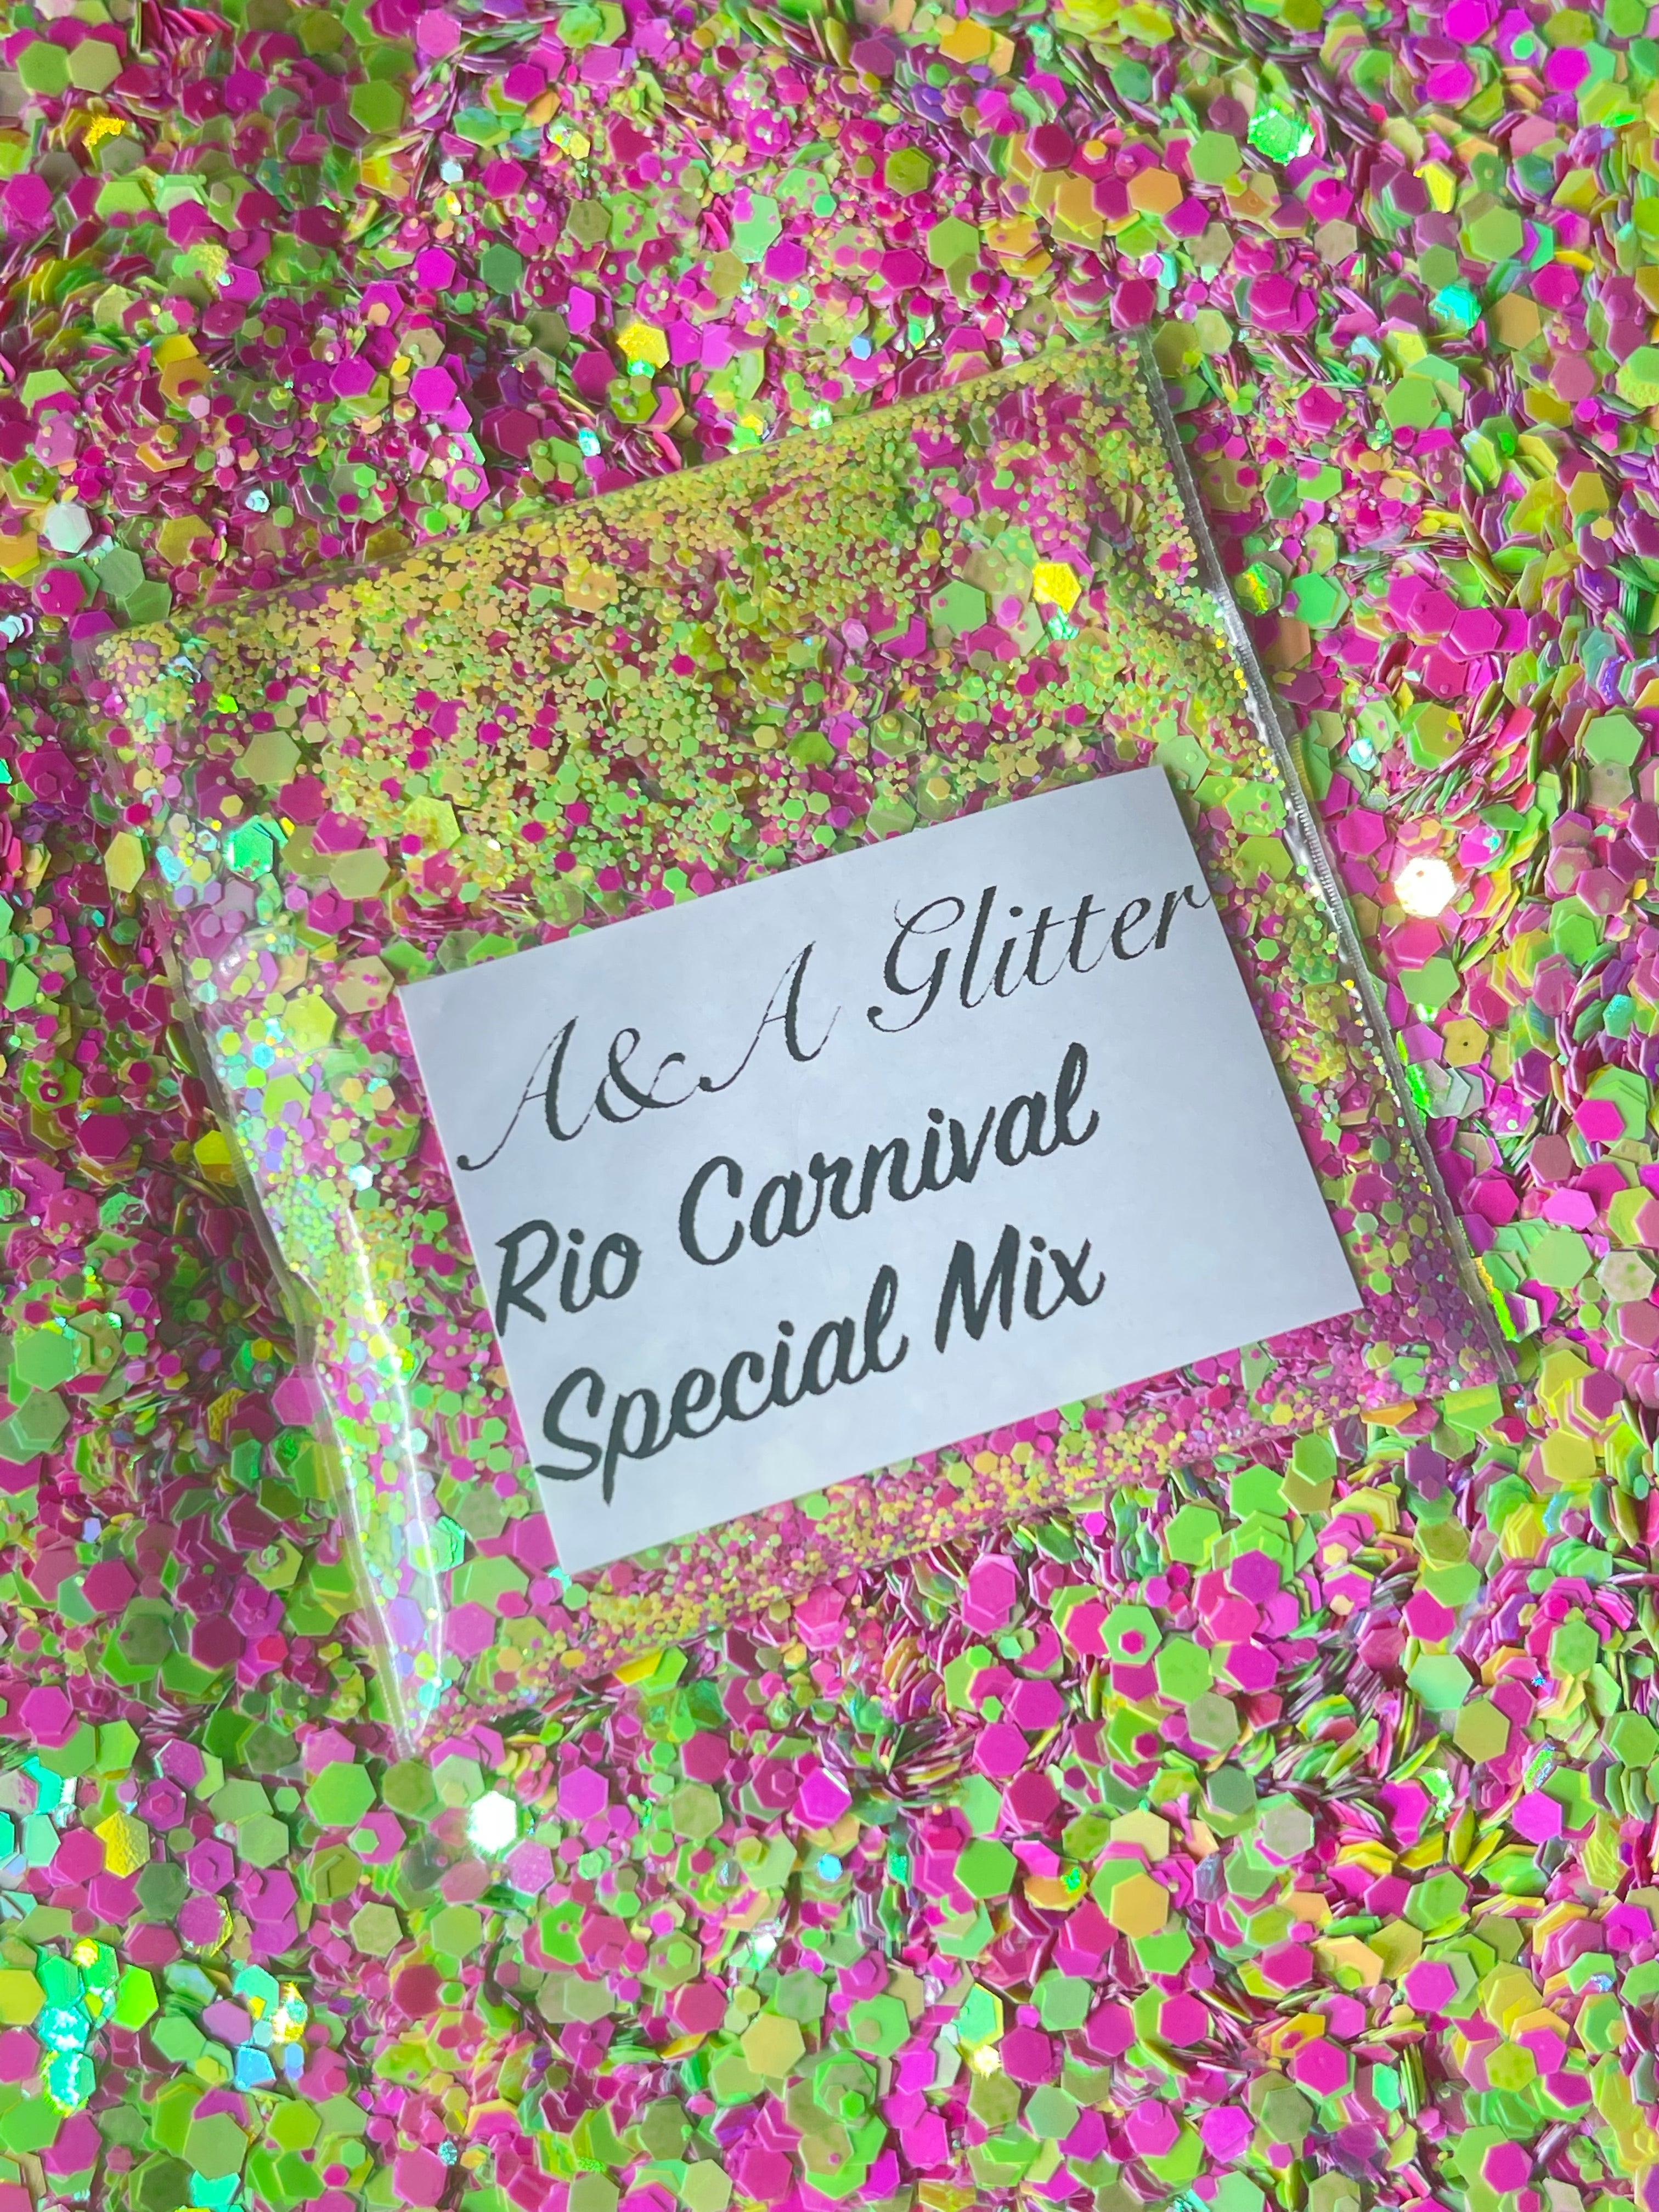 Rio Carnival - Special Mix